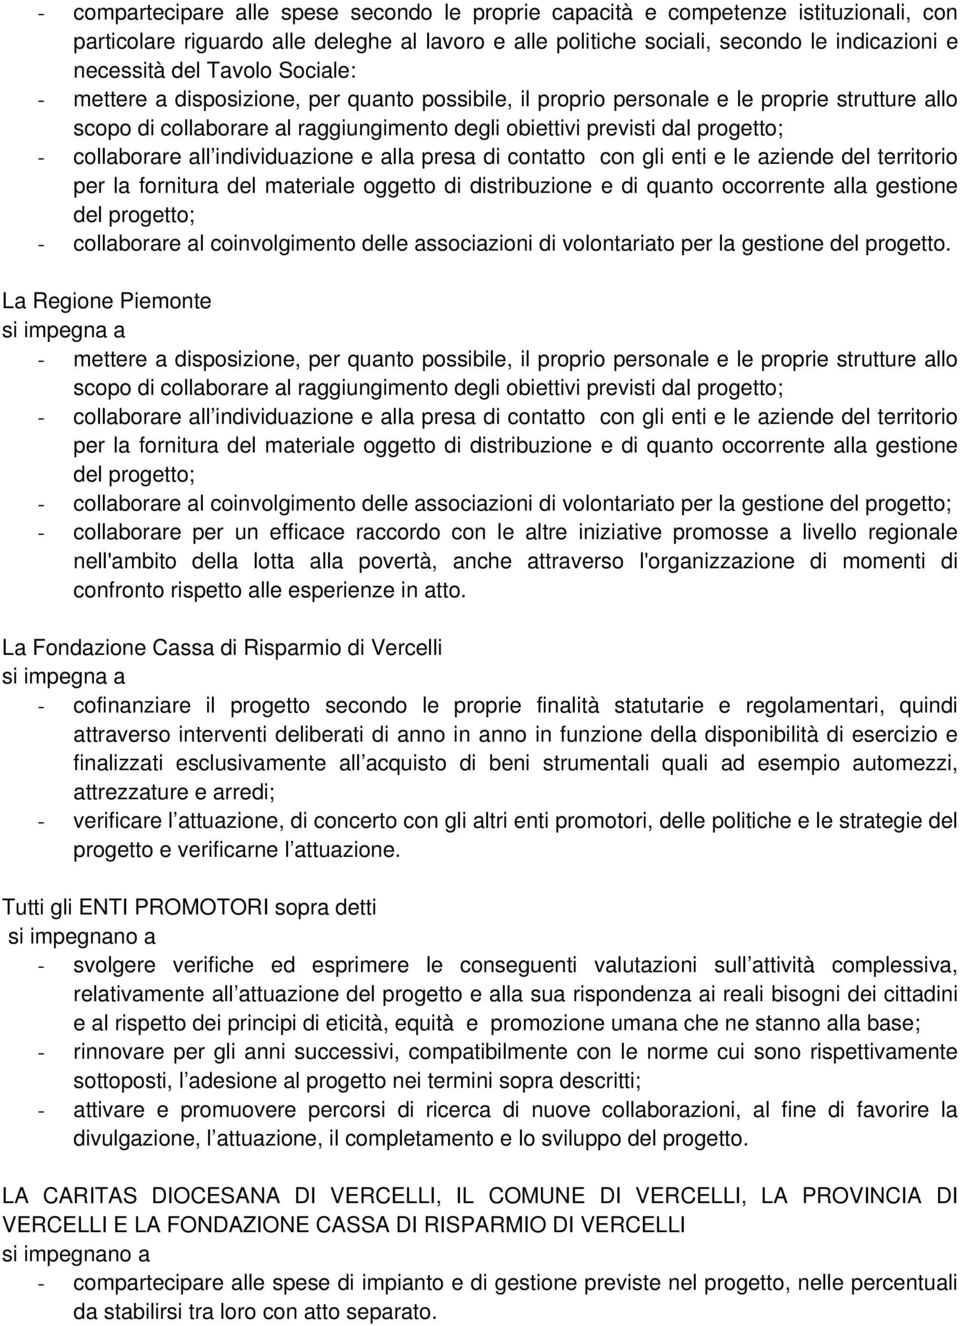 La Regione Piemonte scopo di collaborare al raggiungimento degli obiettivi previsti dal progetto; - collaborare al coinvolgimento delle associazioni di volontariato per la gestione - collaborare per